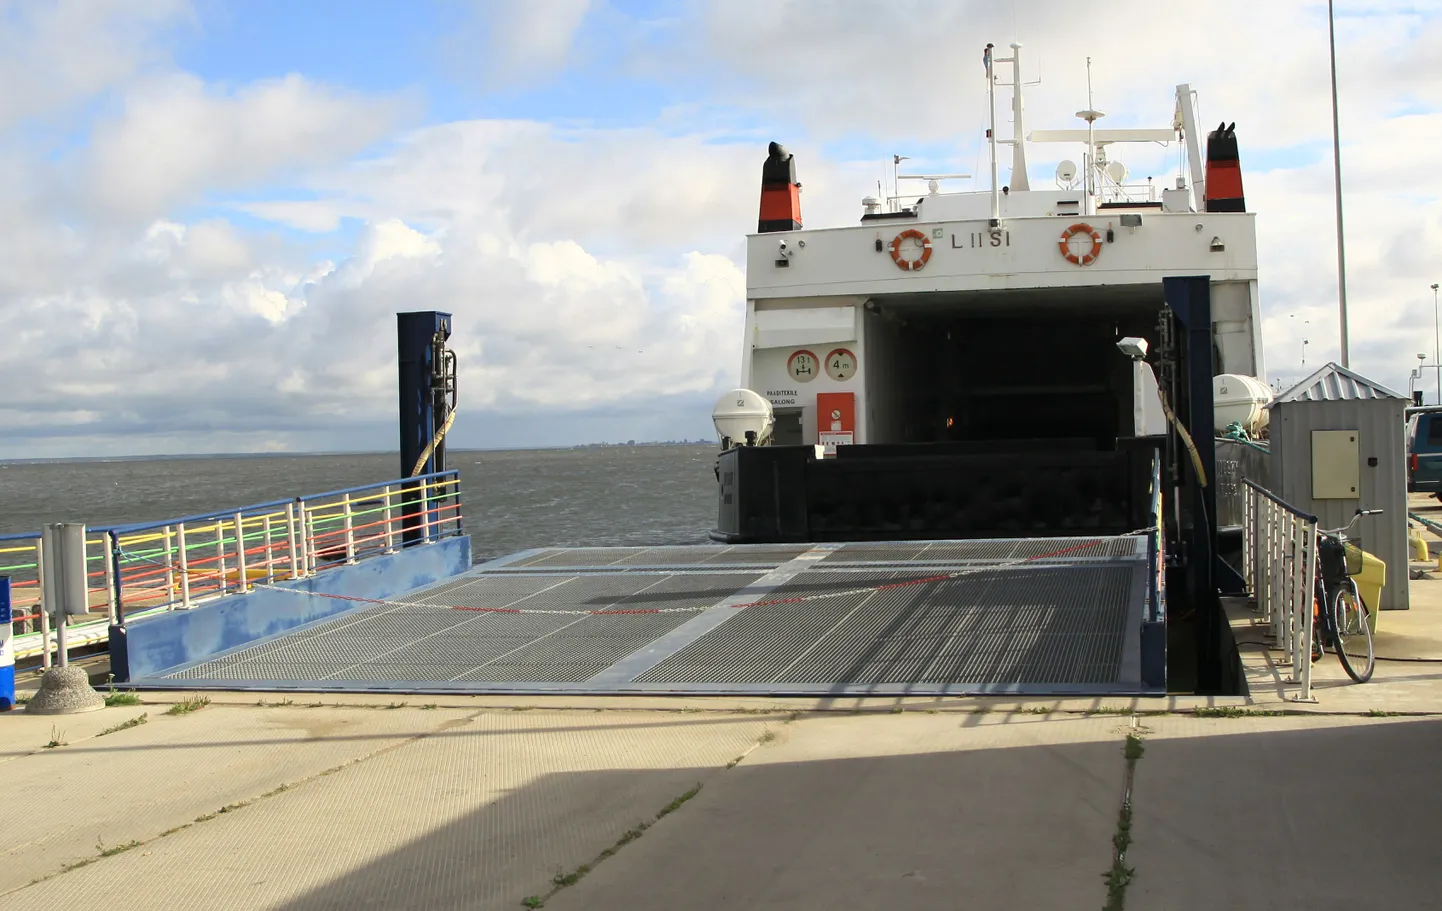 Praegu toimub mandri ja Kihnu saare vahel praamiühendus parvlaevadeag Liisi ja Amalie.